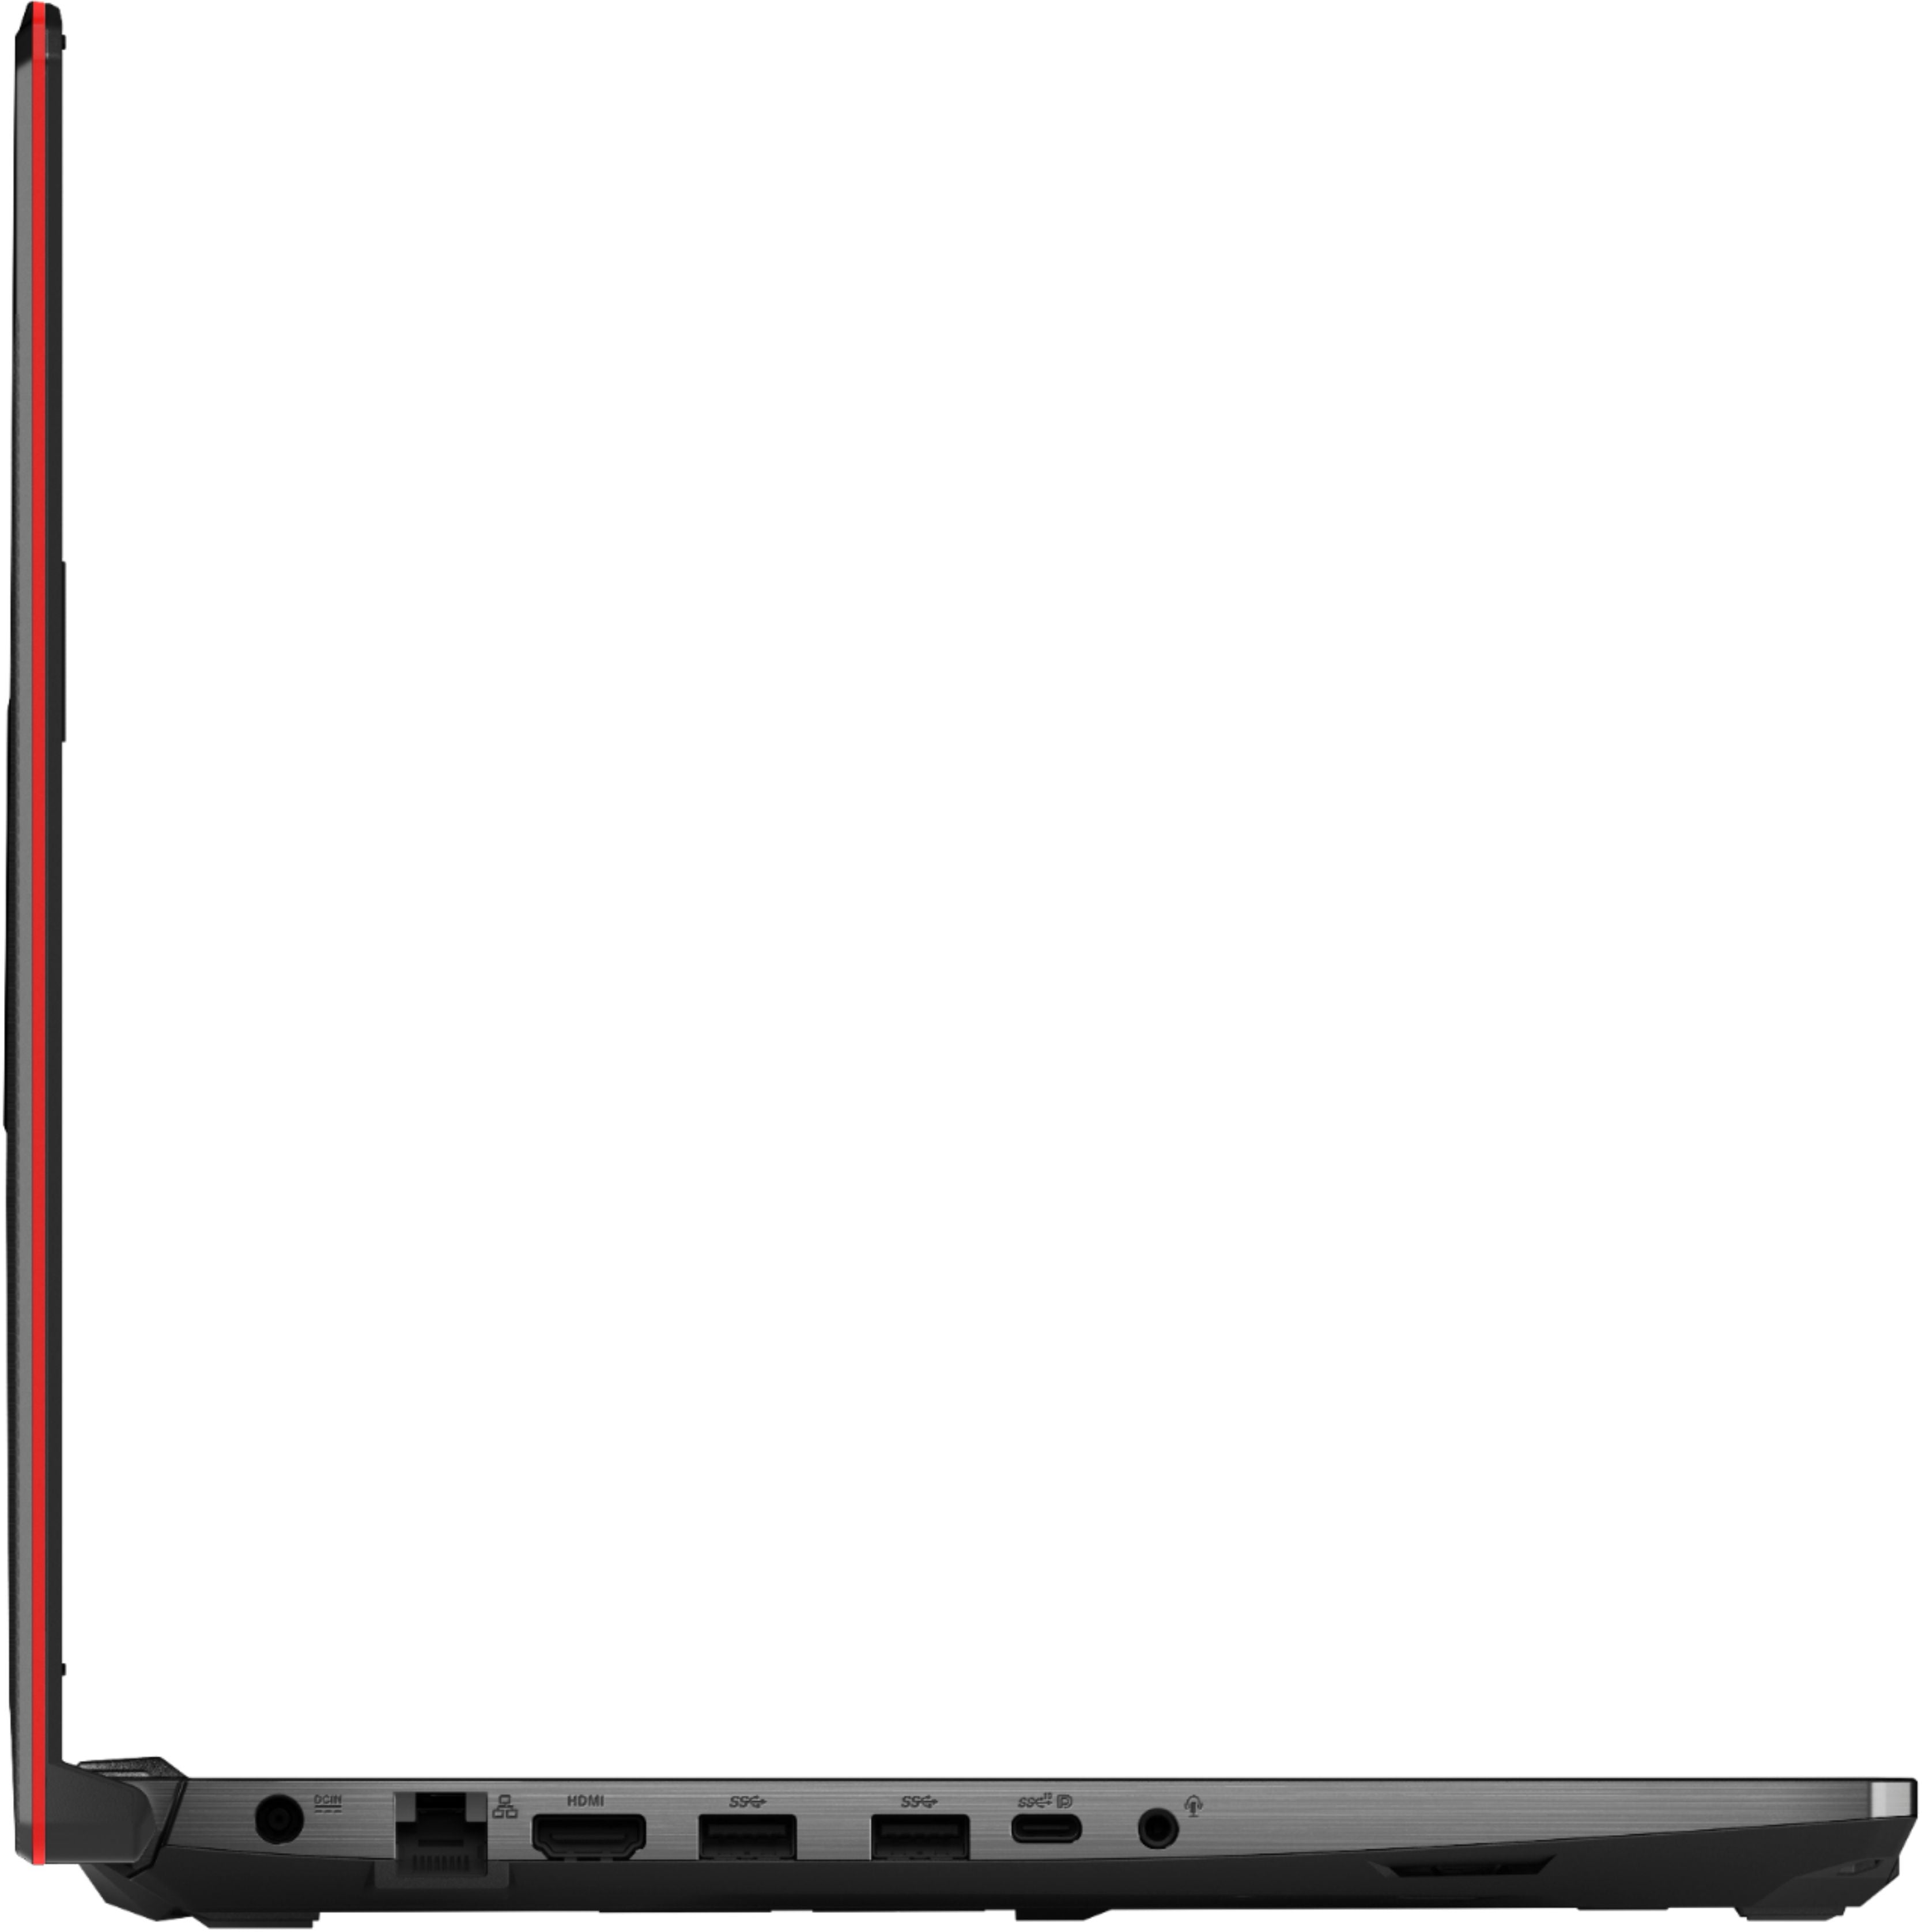 ASUS TUF Gaming F15 Premium Laptop 15.6” FHD Display 10th Gen 